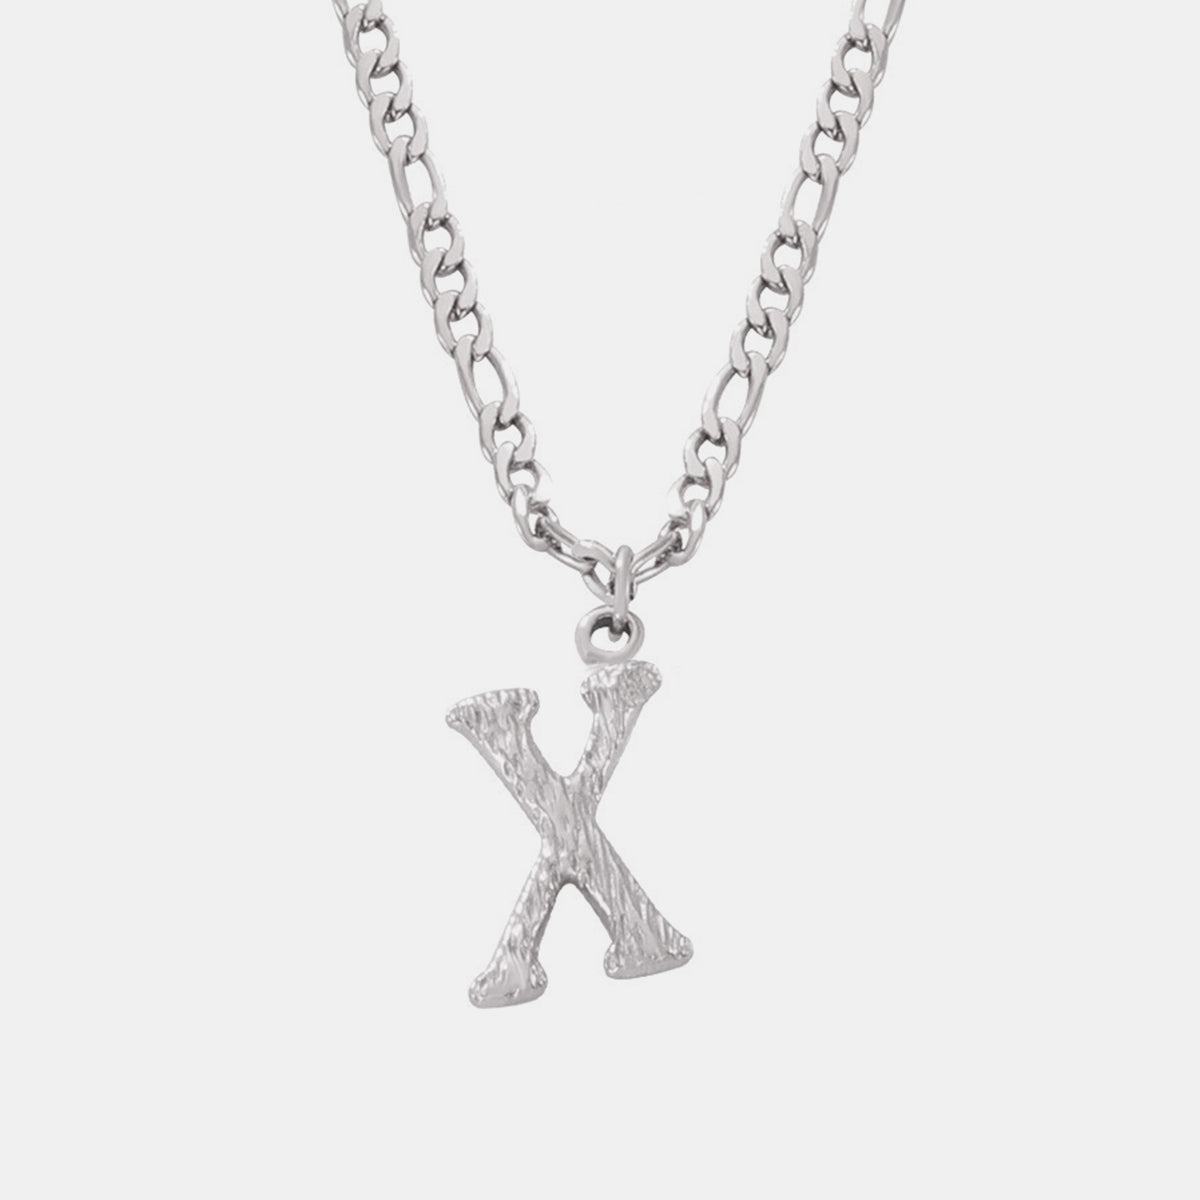 Titanium Steel Letter Pendant Necklace